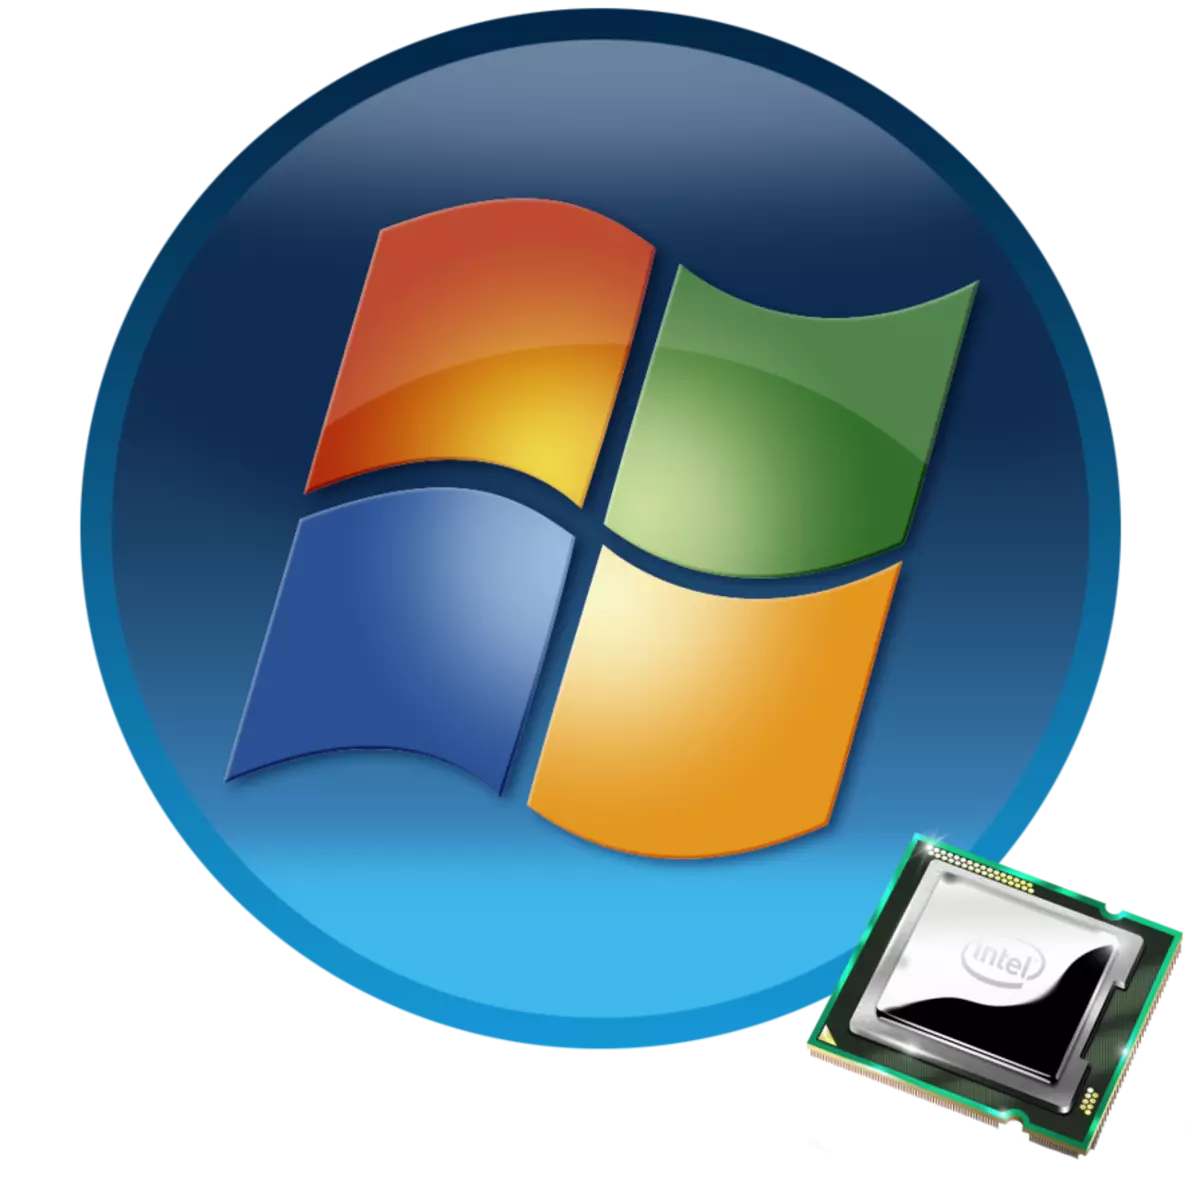 Procesorska jezgra u sustavu Windows 7